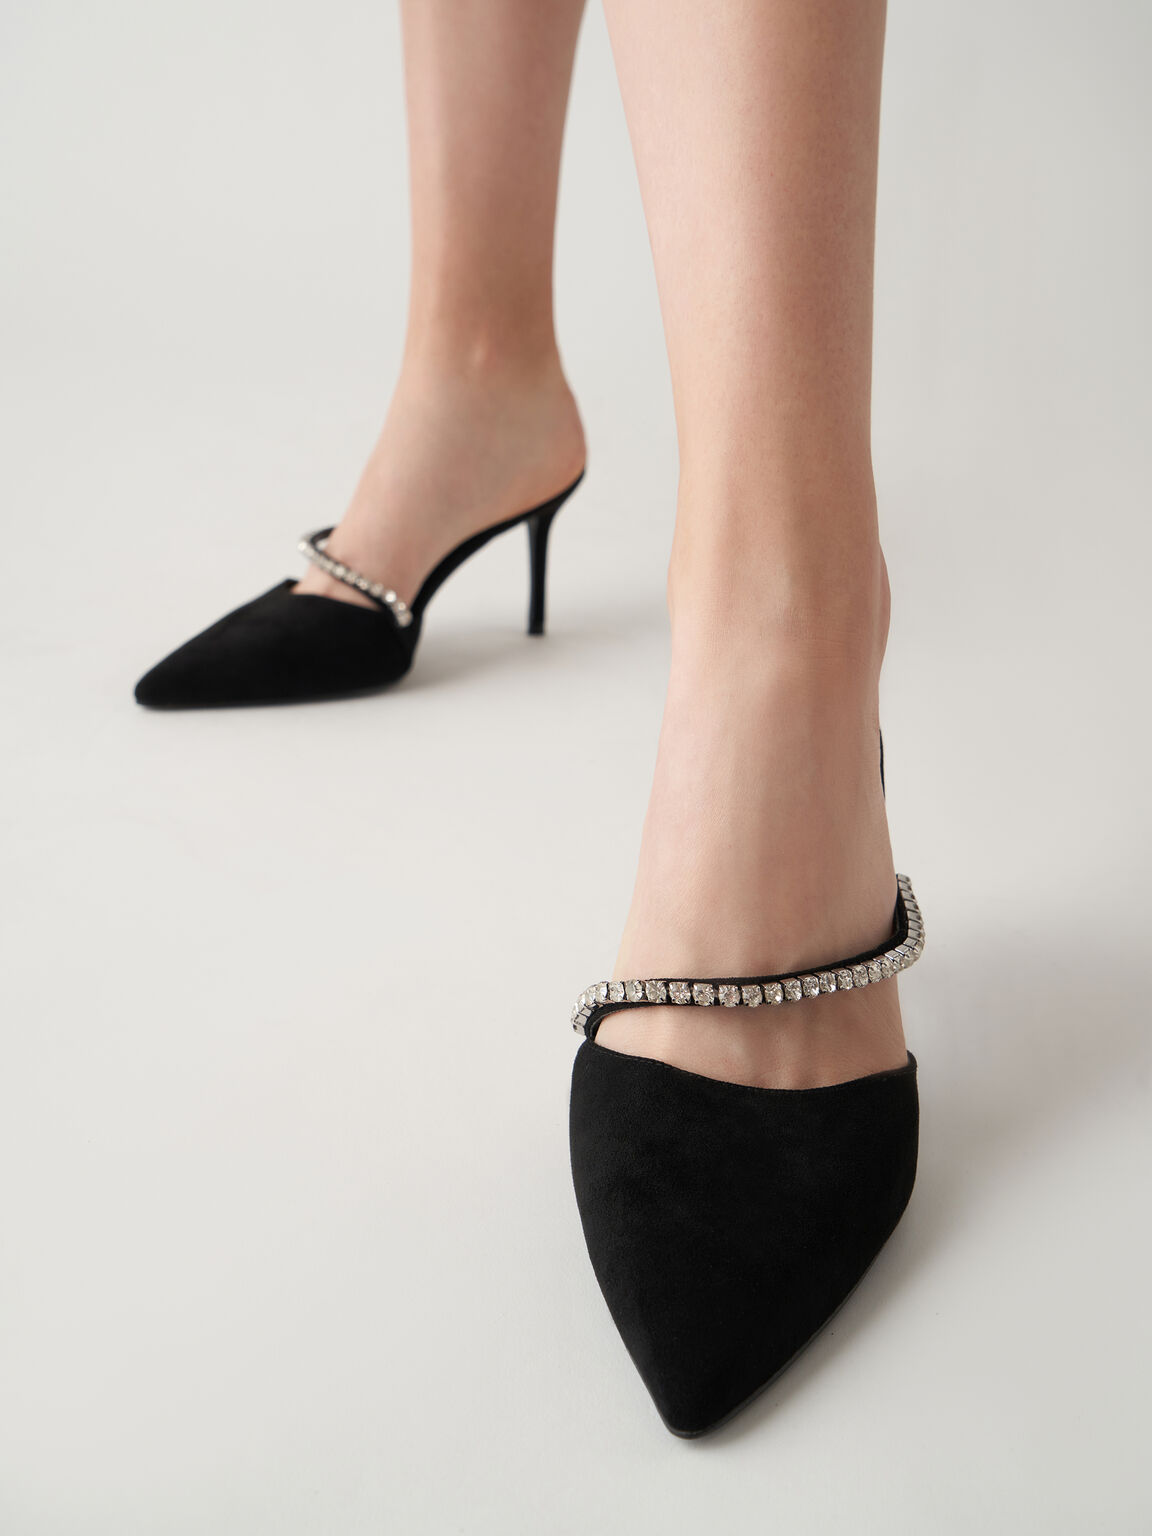 Sepatu Mules Gem-Encrusted Textured Stiletto, Black, hi-res